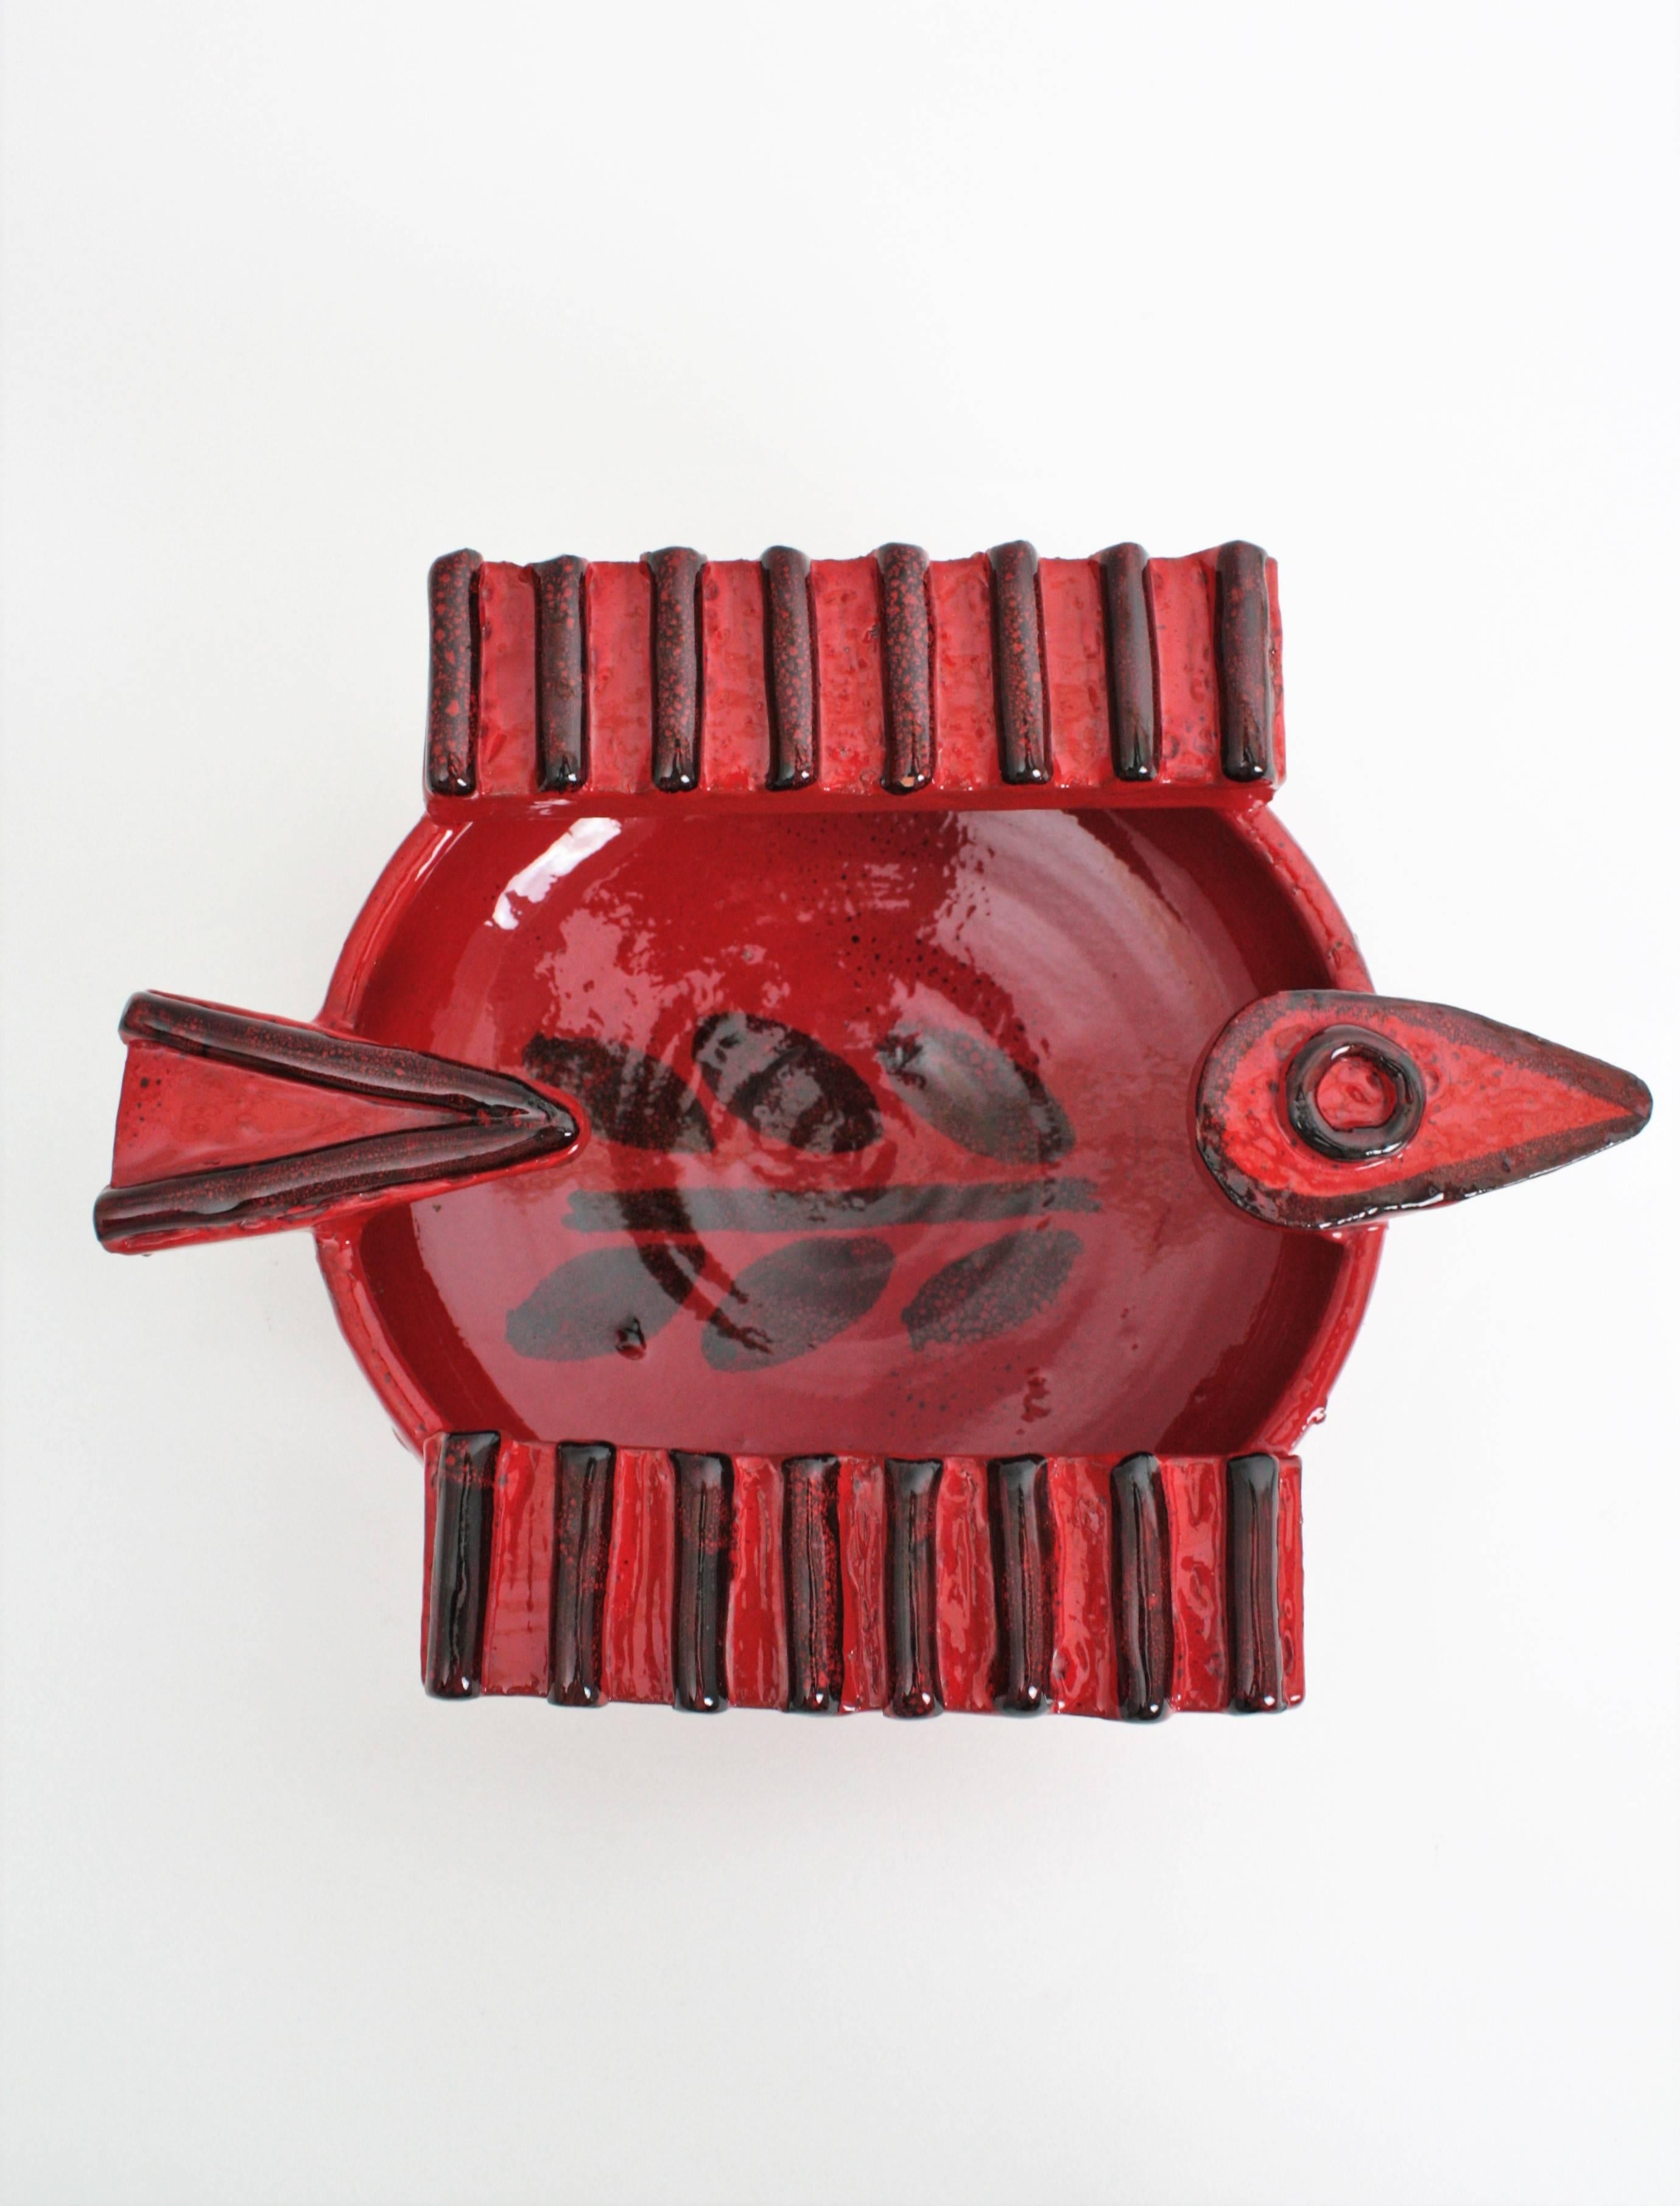 Roter Aschenbecher/Schale aus Keramik in Vogelform aus der spanischen Picasso-Ära, 1950er Jahre (Spanisch)